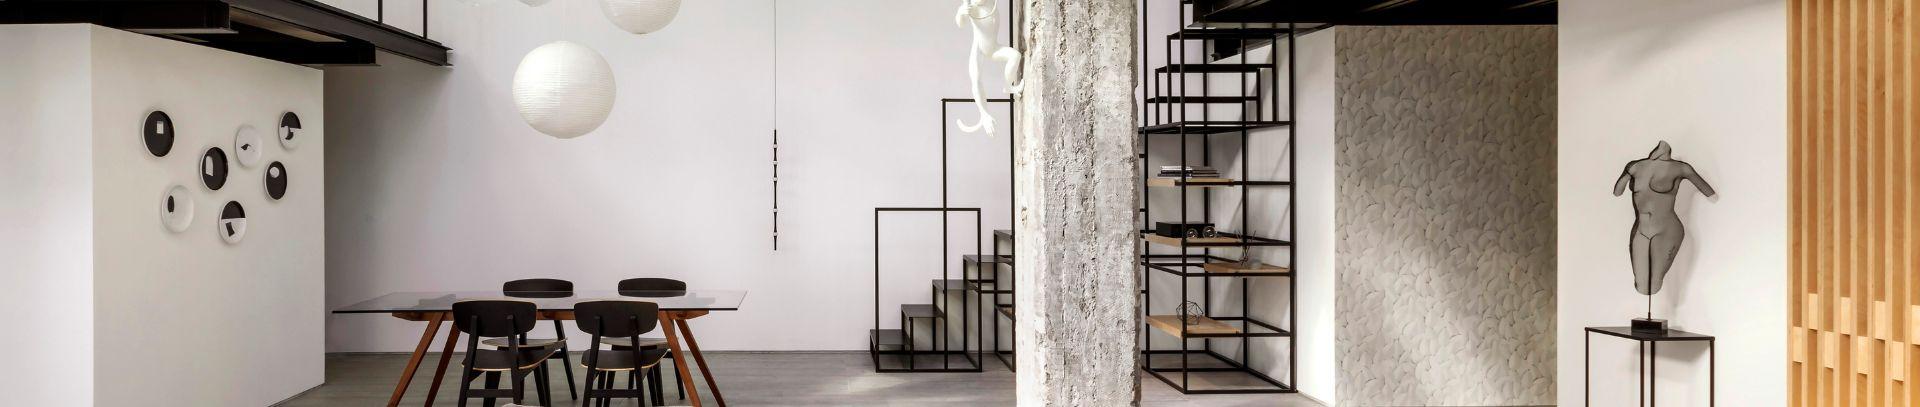 Un loft moderne noir et blanc revêtu de dalles en grès cérame | Casalgrande Padana